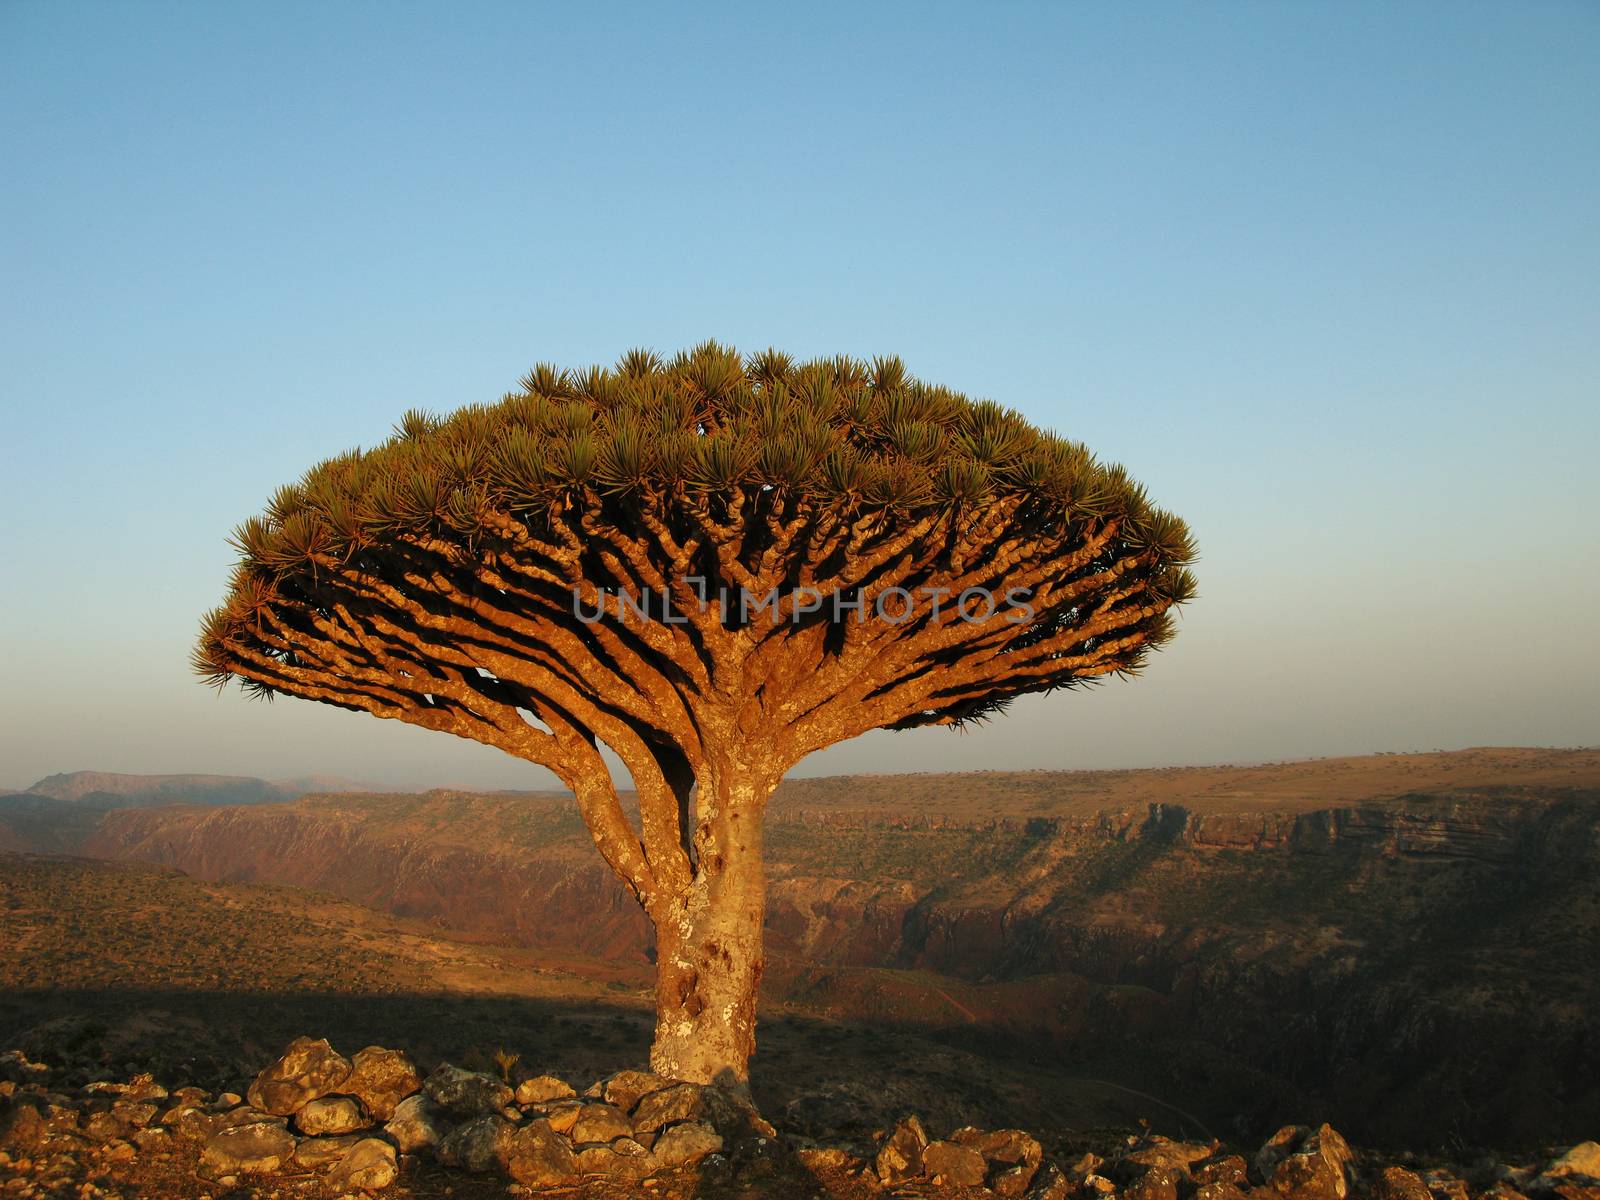 Dragon tree, Socotra by homocosmicos